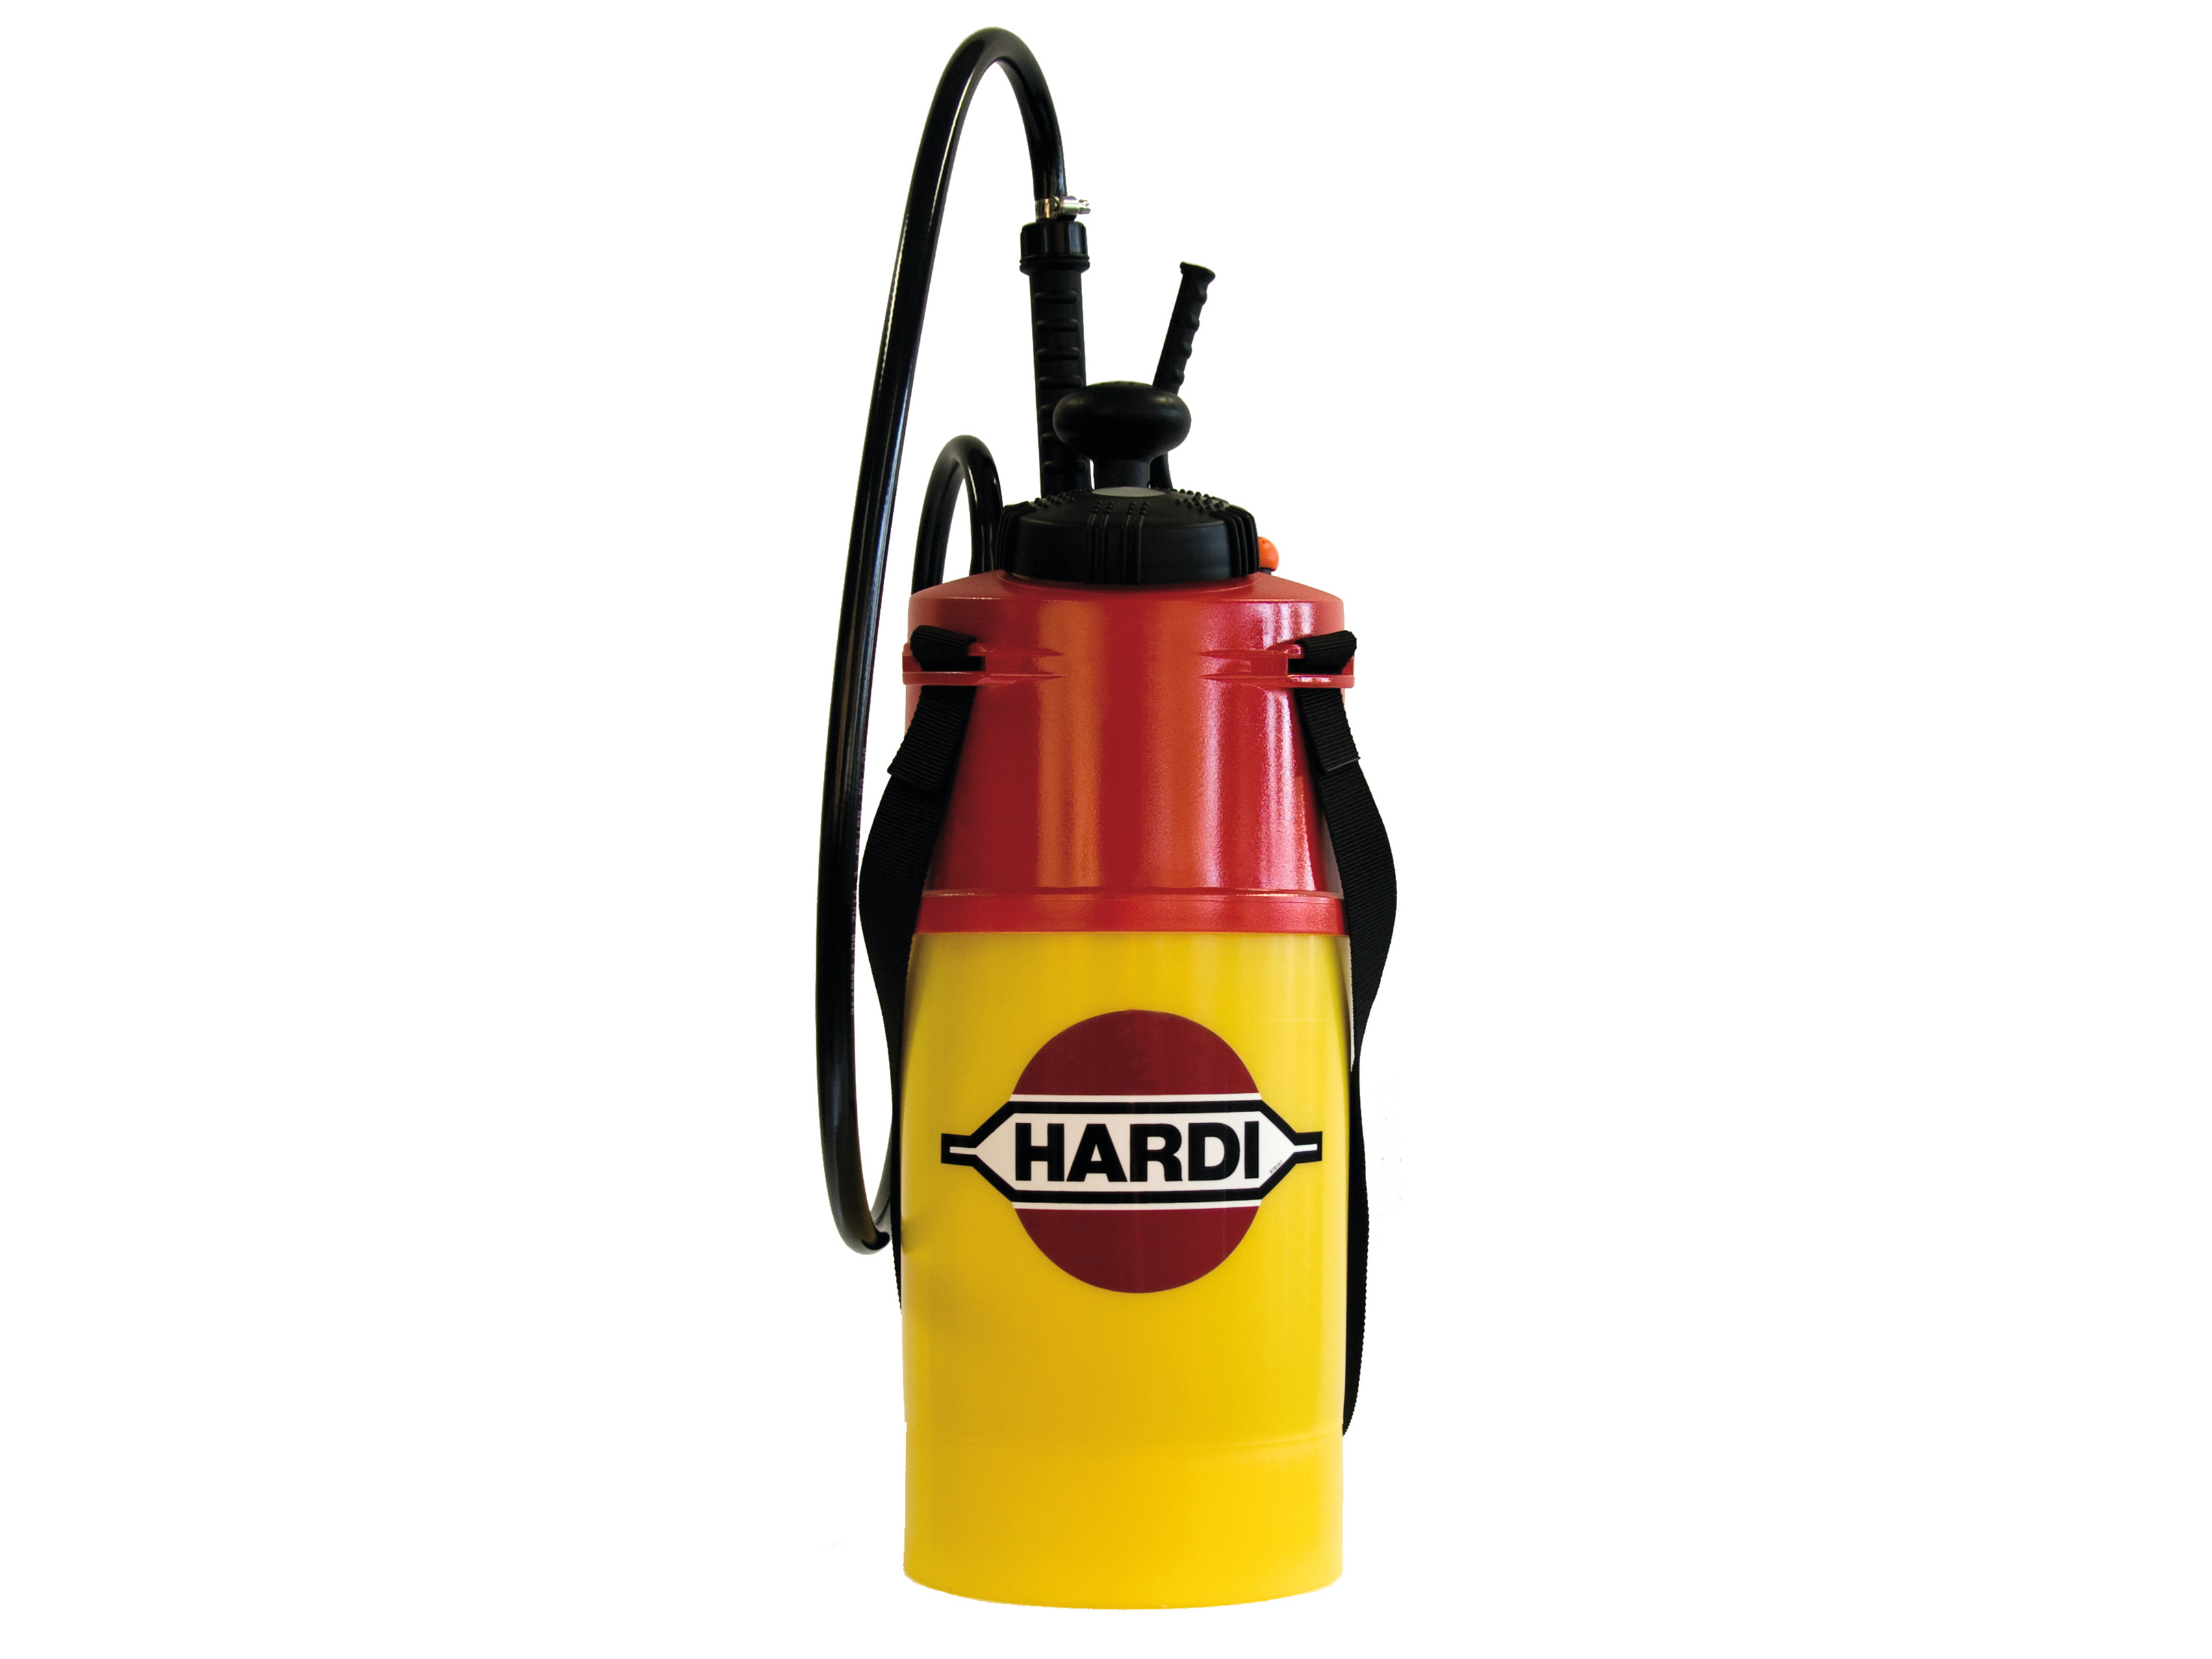 Hardi P6 Handheld Sprayer